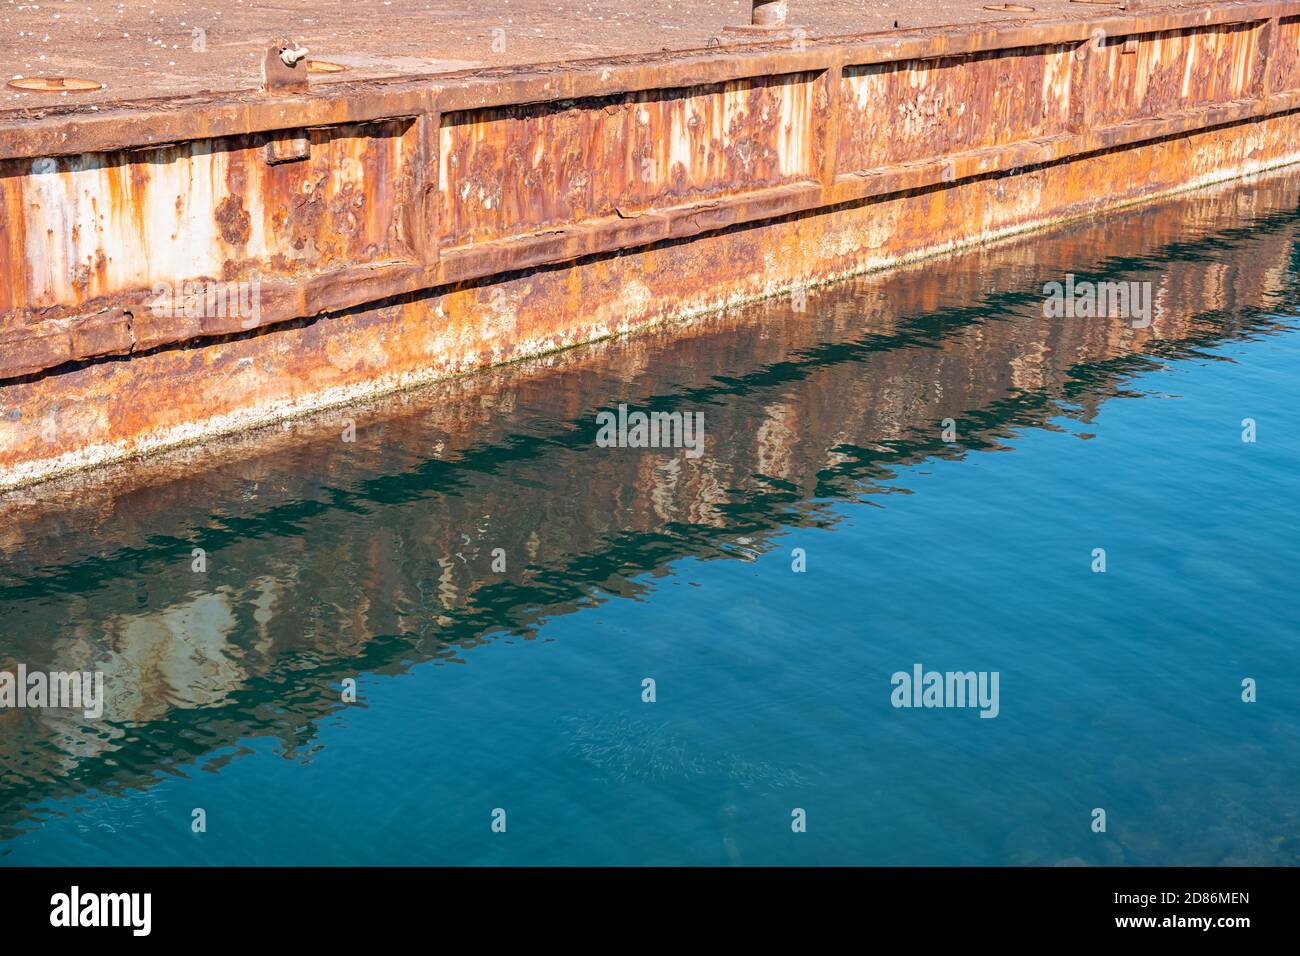 Vieux port industriel en métal rouillé réflexions sur l'eau de mer bleu clair. Banque D'Images